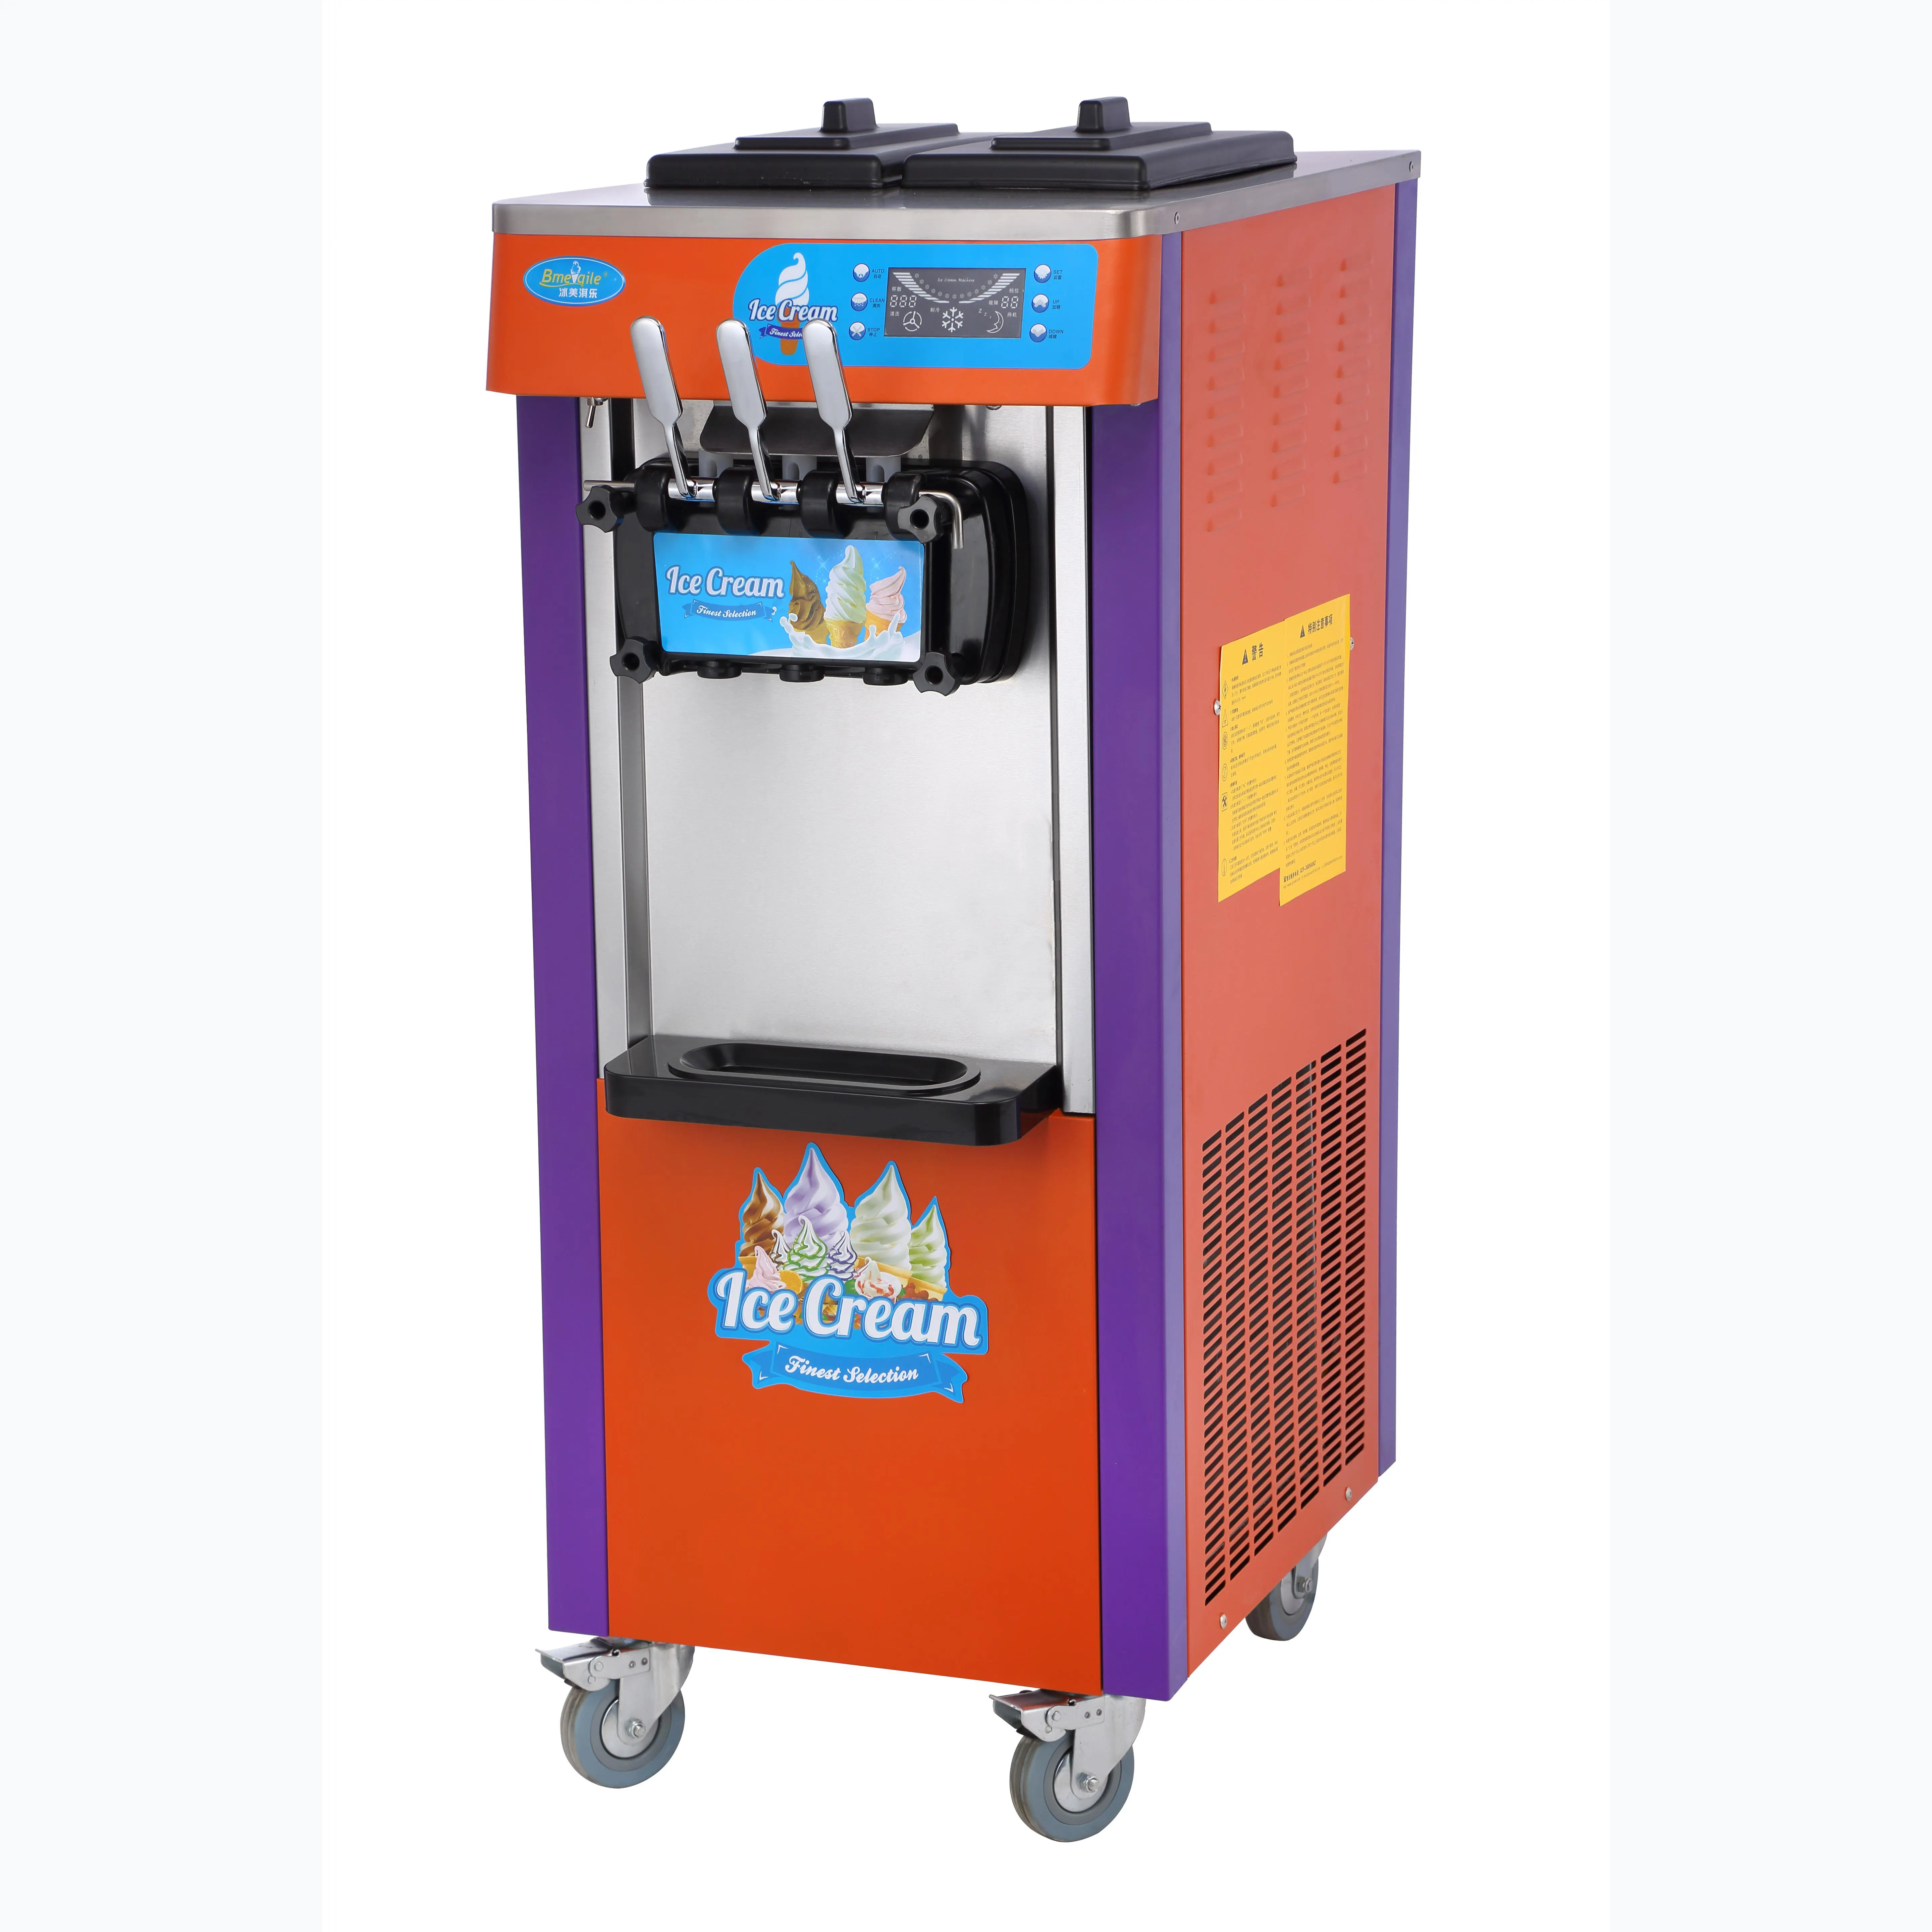 Commerciale macchina per fare il gelato mcdonald macchina per gelato soft